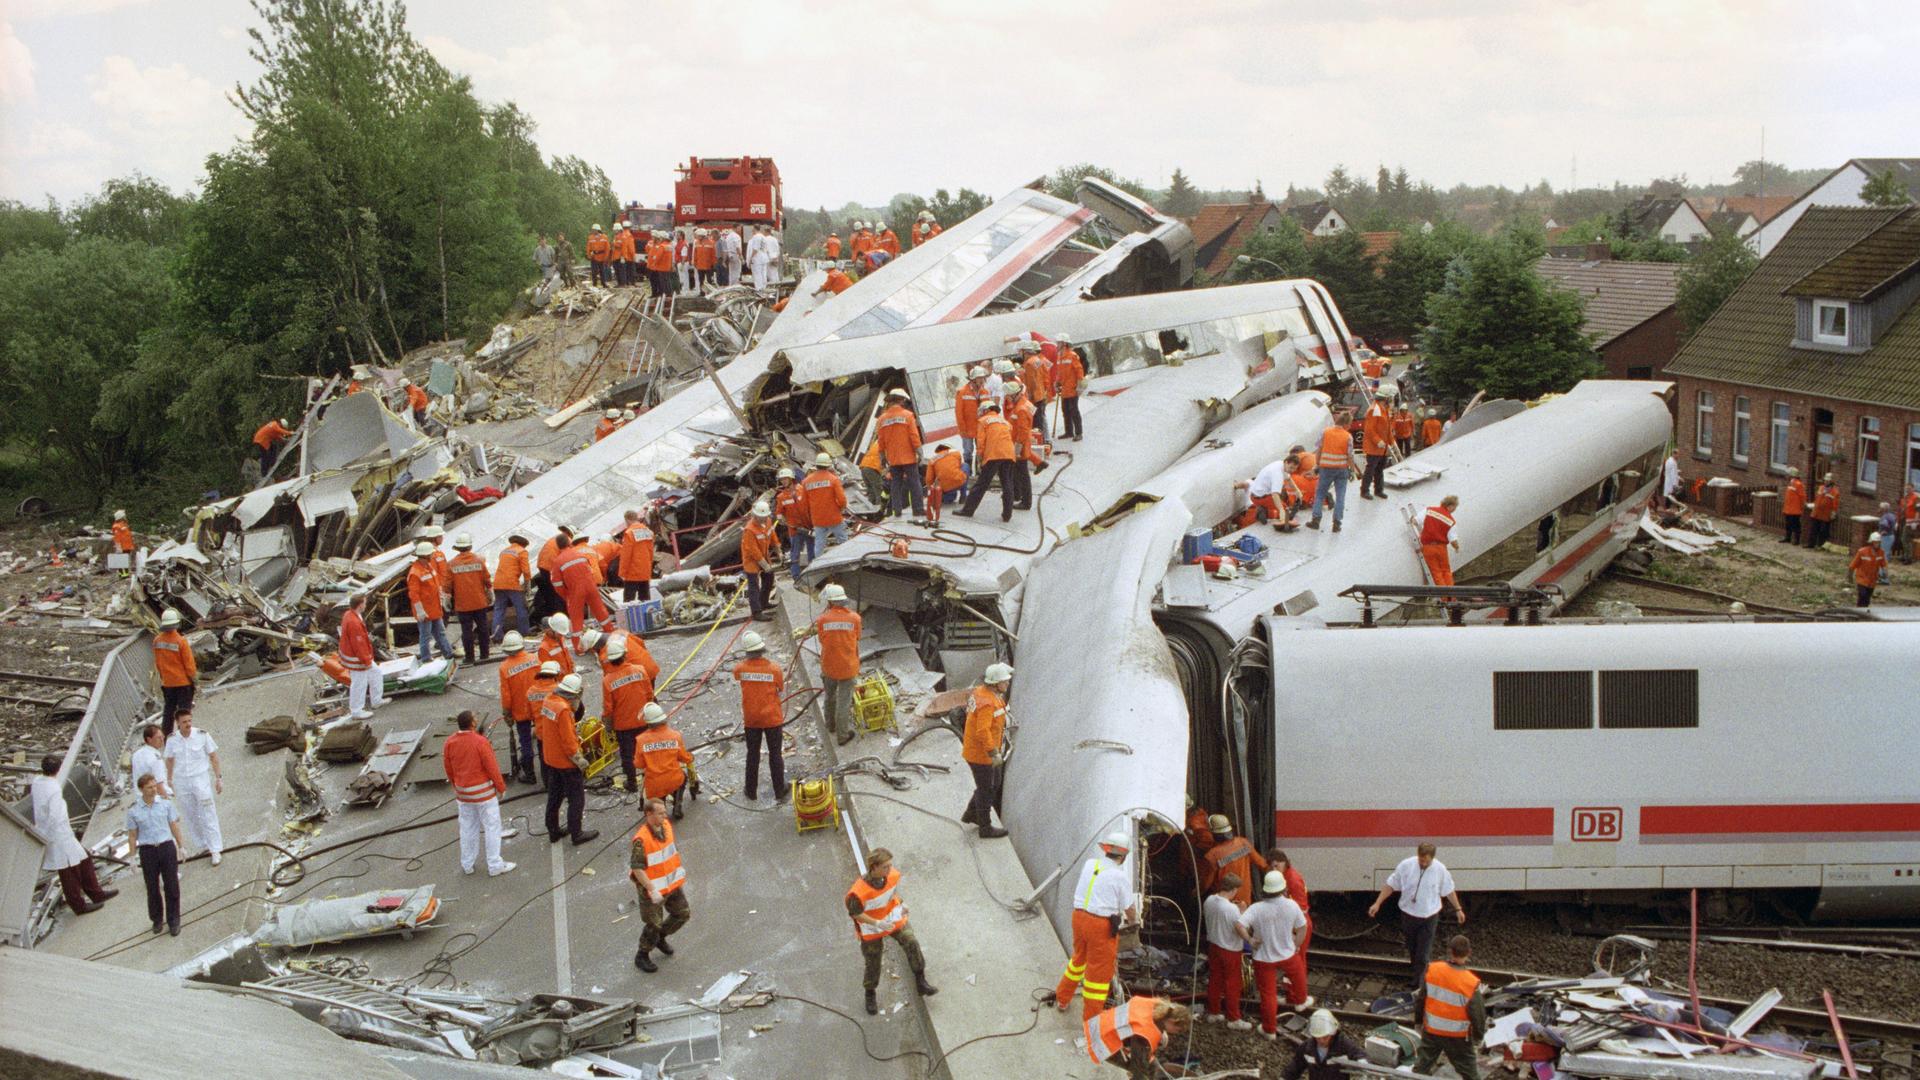 Аварии катастрофы происшествия. Крушение Ice у Эшеде в 1998. Железнодорожная катастрофа в Германии 1998. Крушение поезда Германия 1998. Железнодорожная катастрофа под Эшеде.